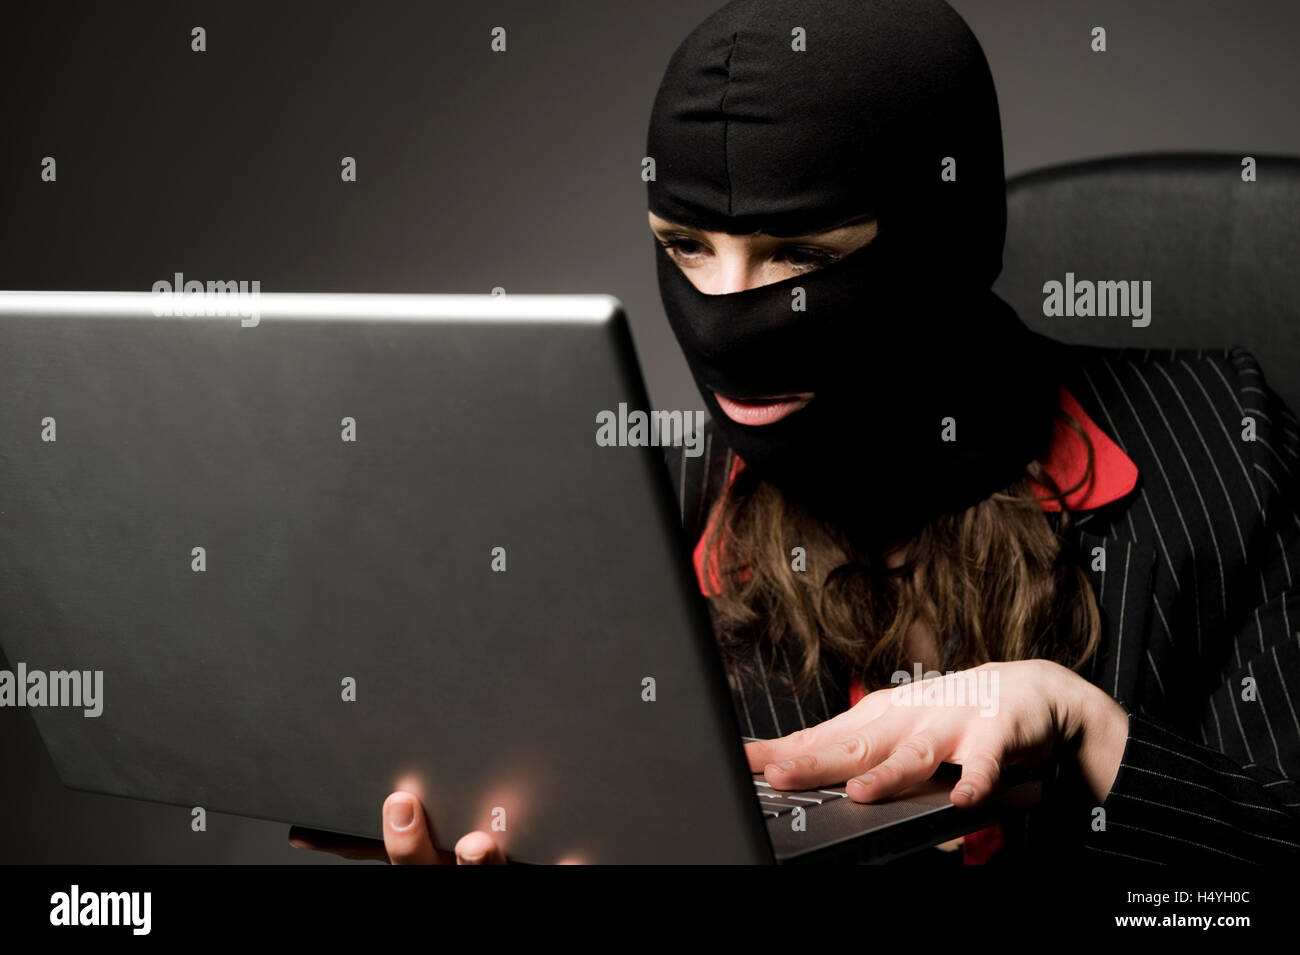 Masked burglar with laptop, economic espionage, data piracy Stock Photo